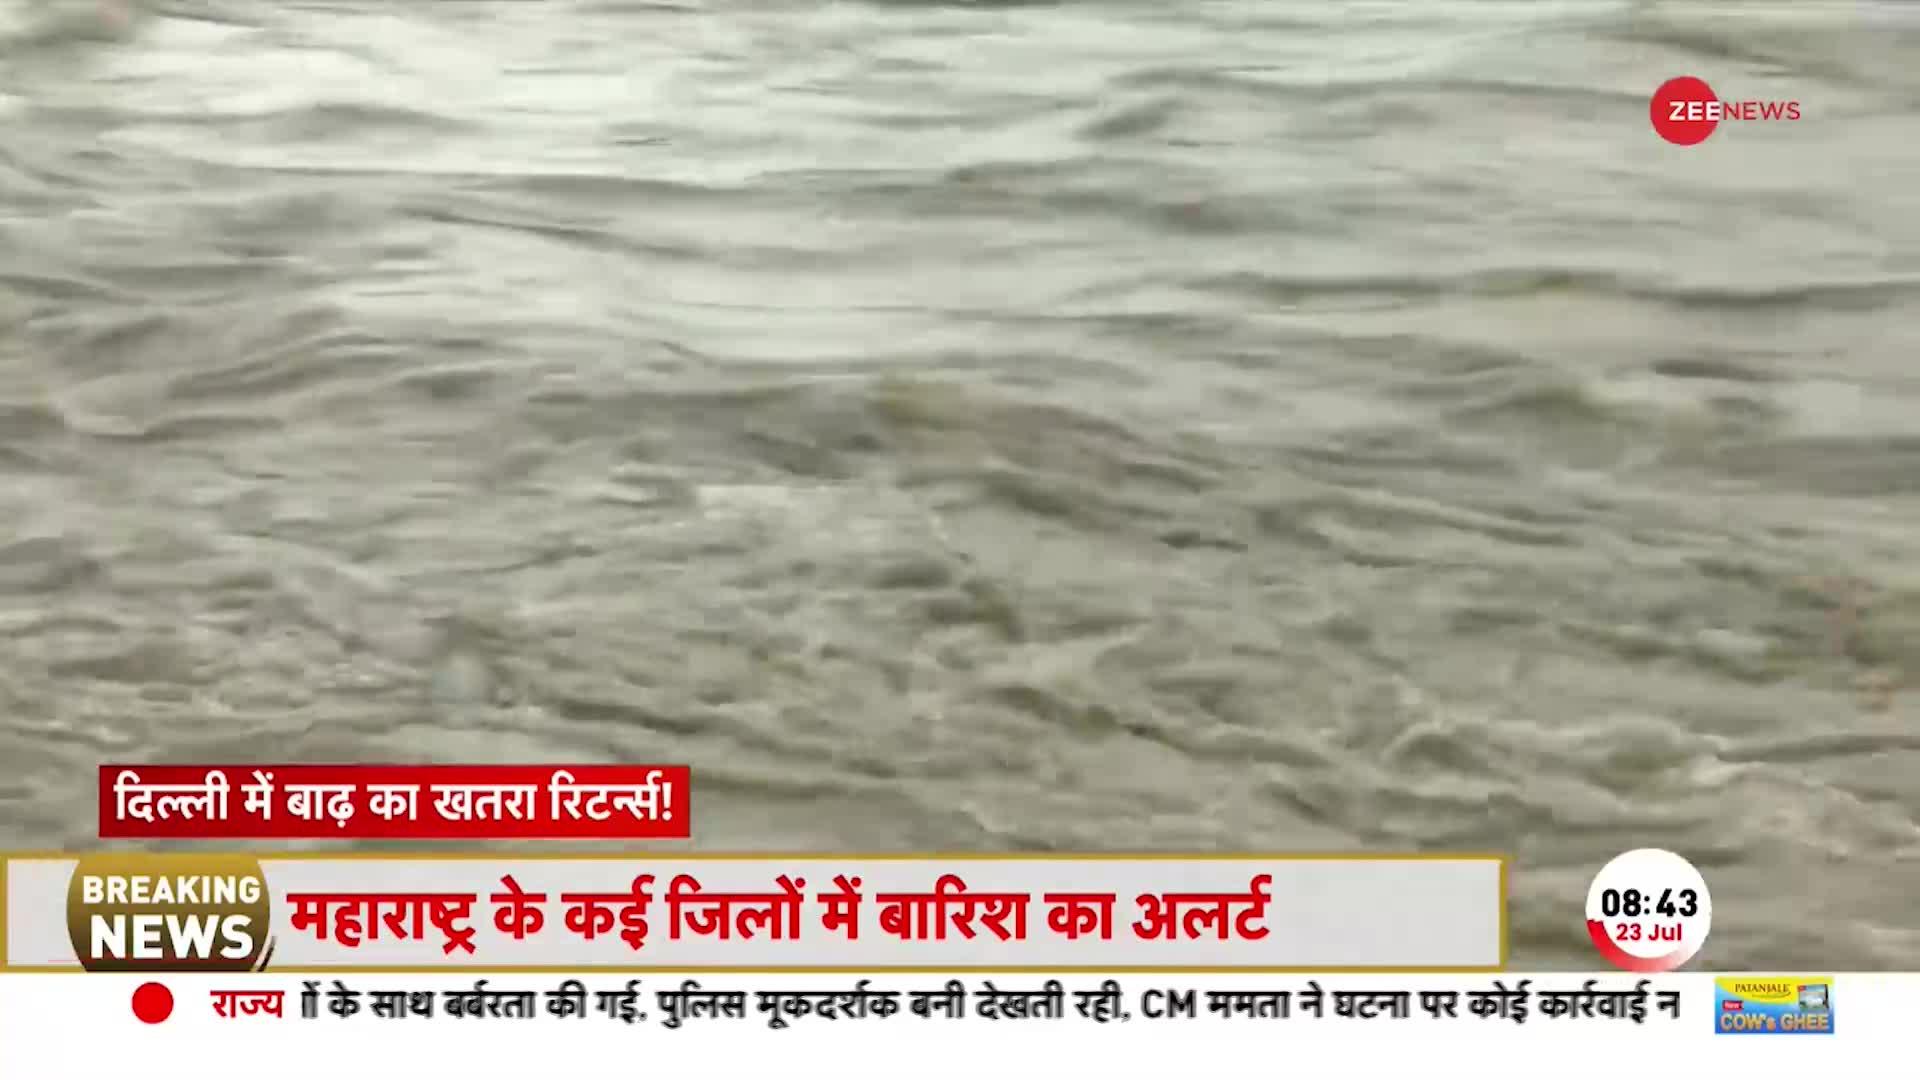 Delhi Flood: दिल्ली में बाढ़ का खतरा रिटर्न्स ! हथिनी कुंड से छोड़ा गया है 2.9 लाख क्यूसेक पानी